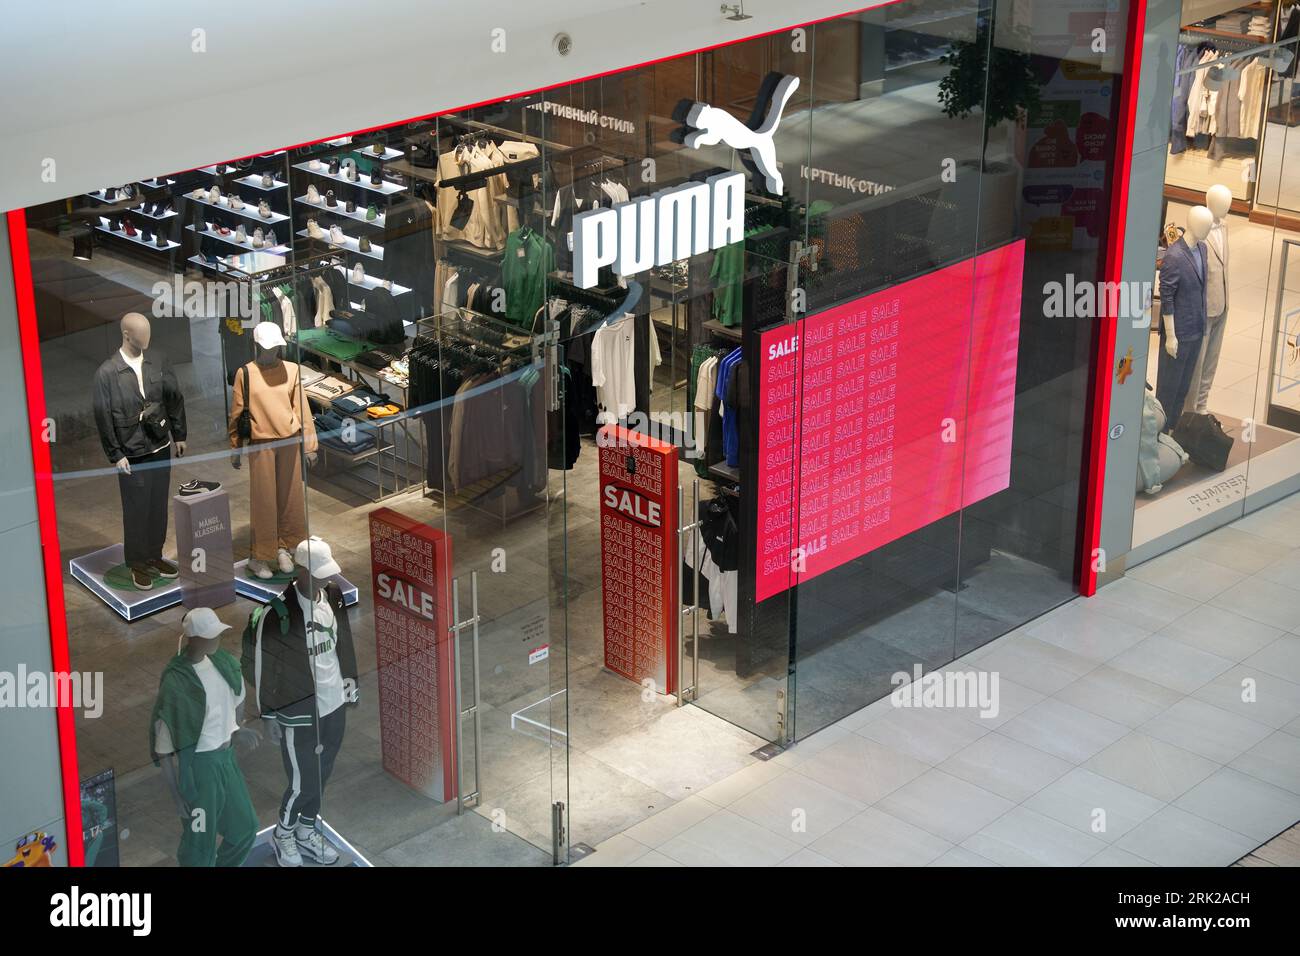 Almaty, Kazakistan - 17 agosto 2023: Negozio al dettaglio Puma nel centro commerciale. Marchio di calzature Foto Stock